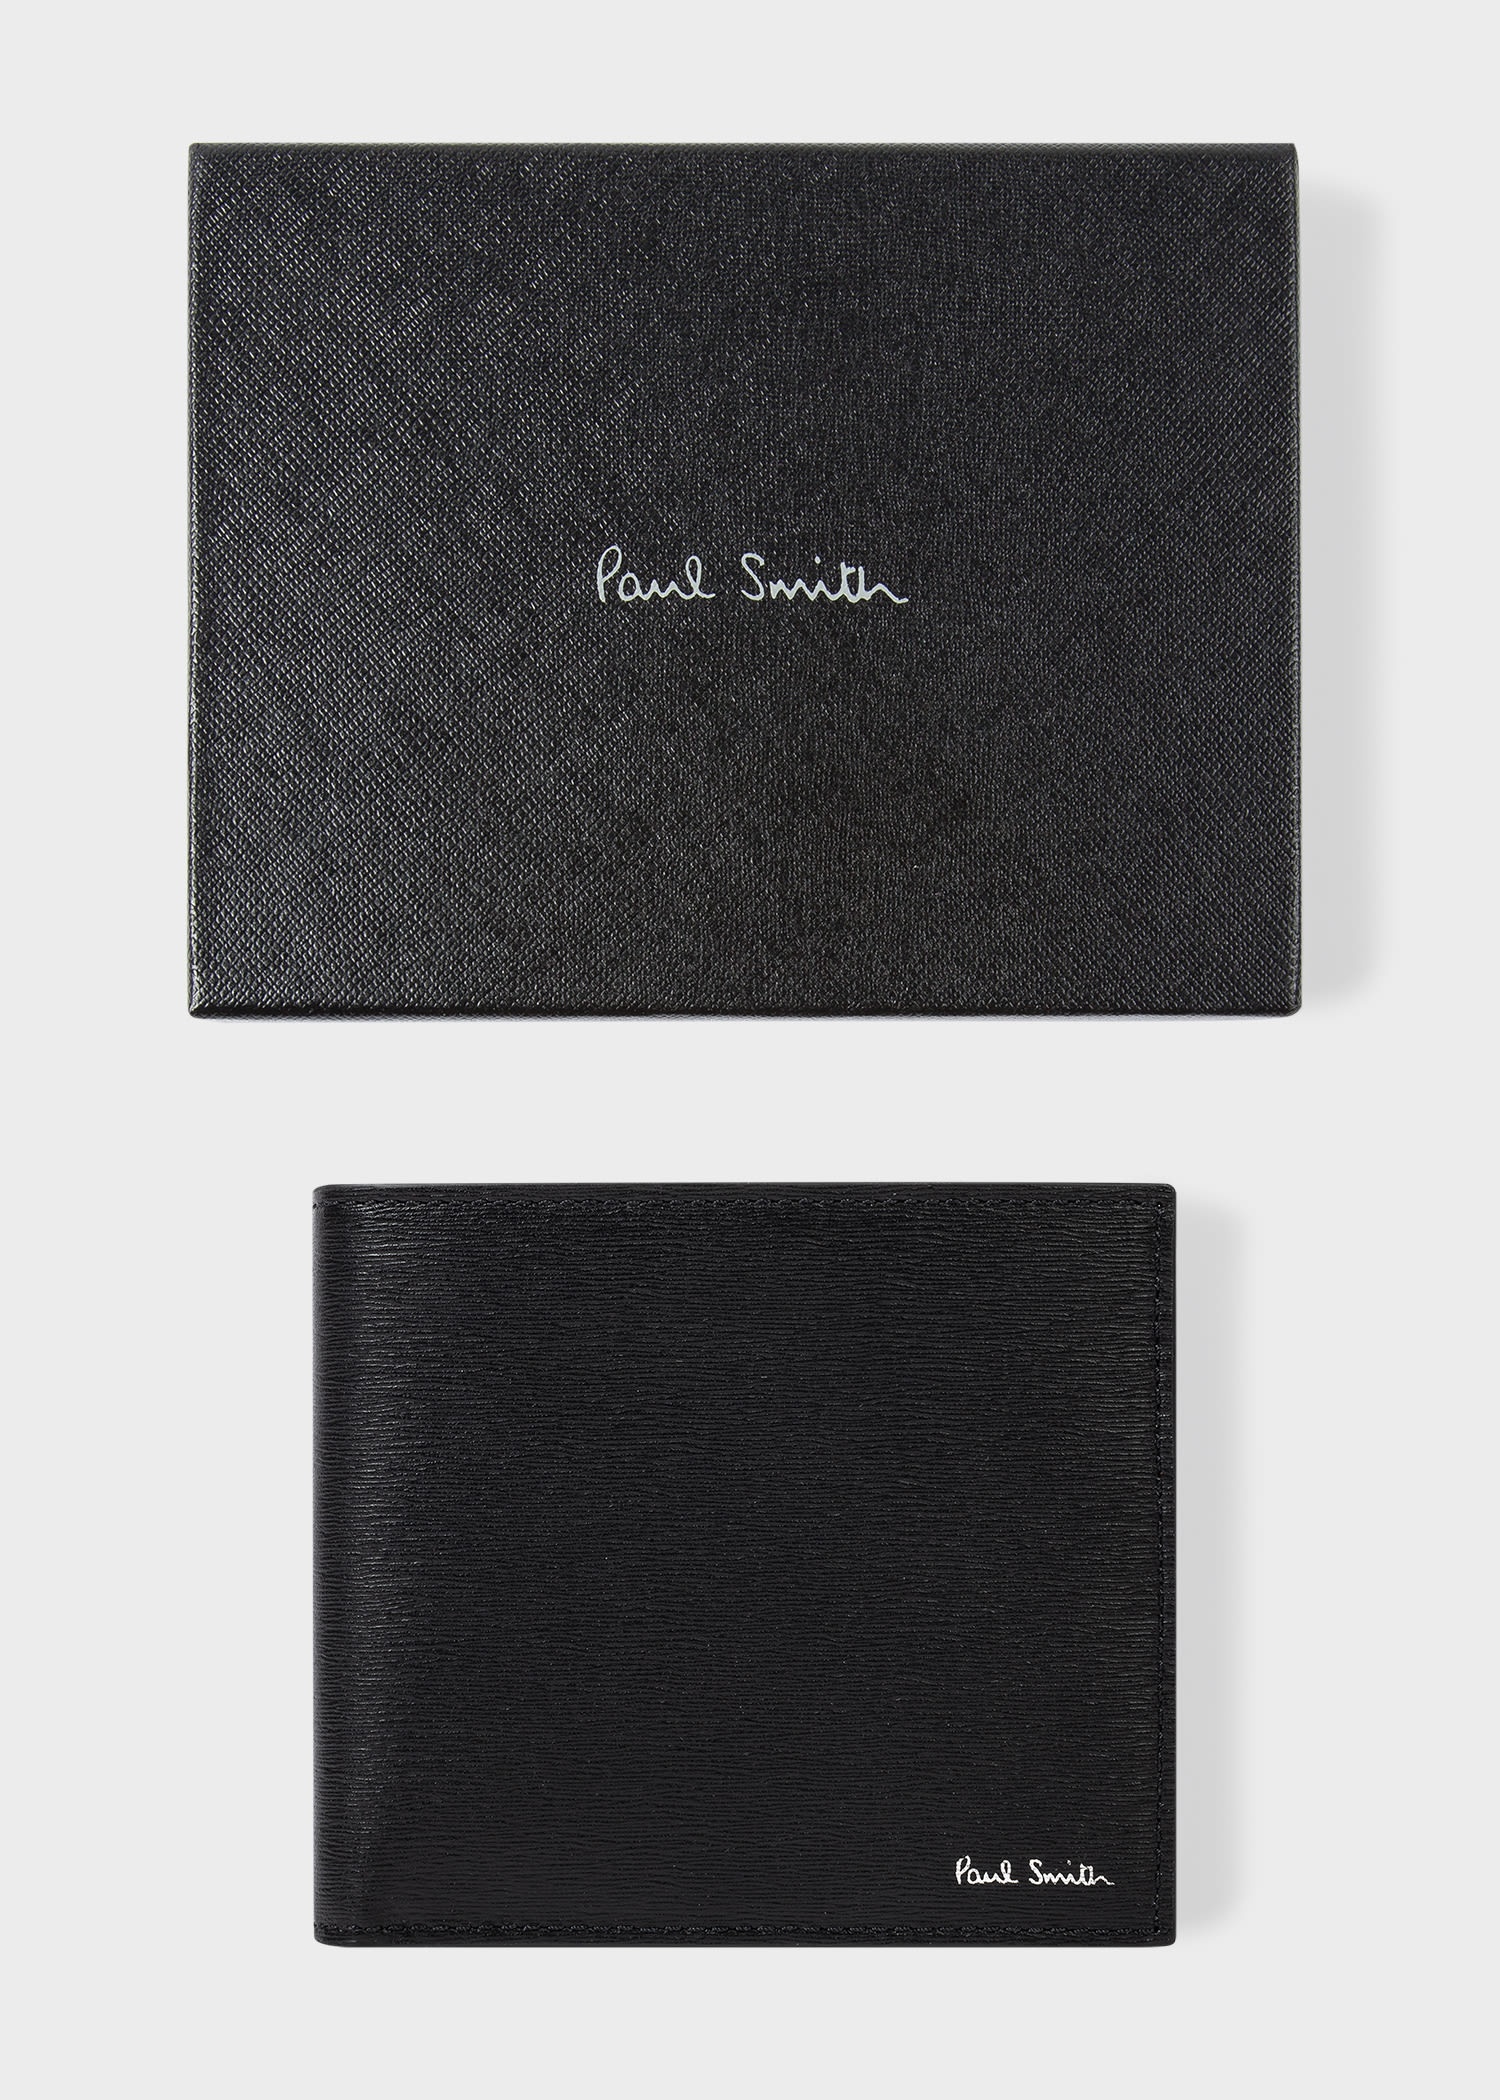 Paul Smith Leather Bilfold Wallet   REVERSIBLE